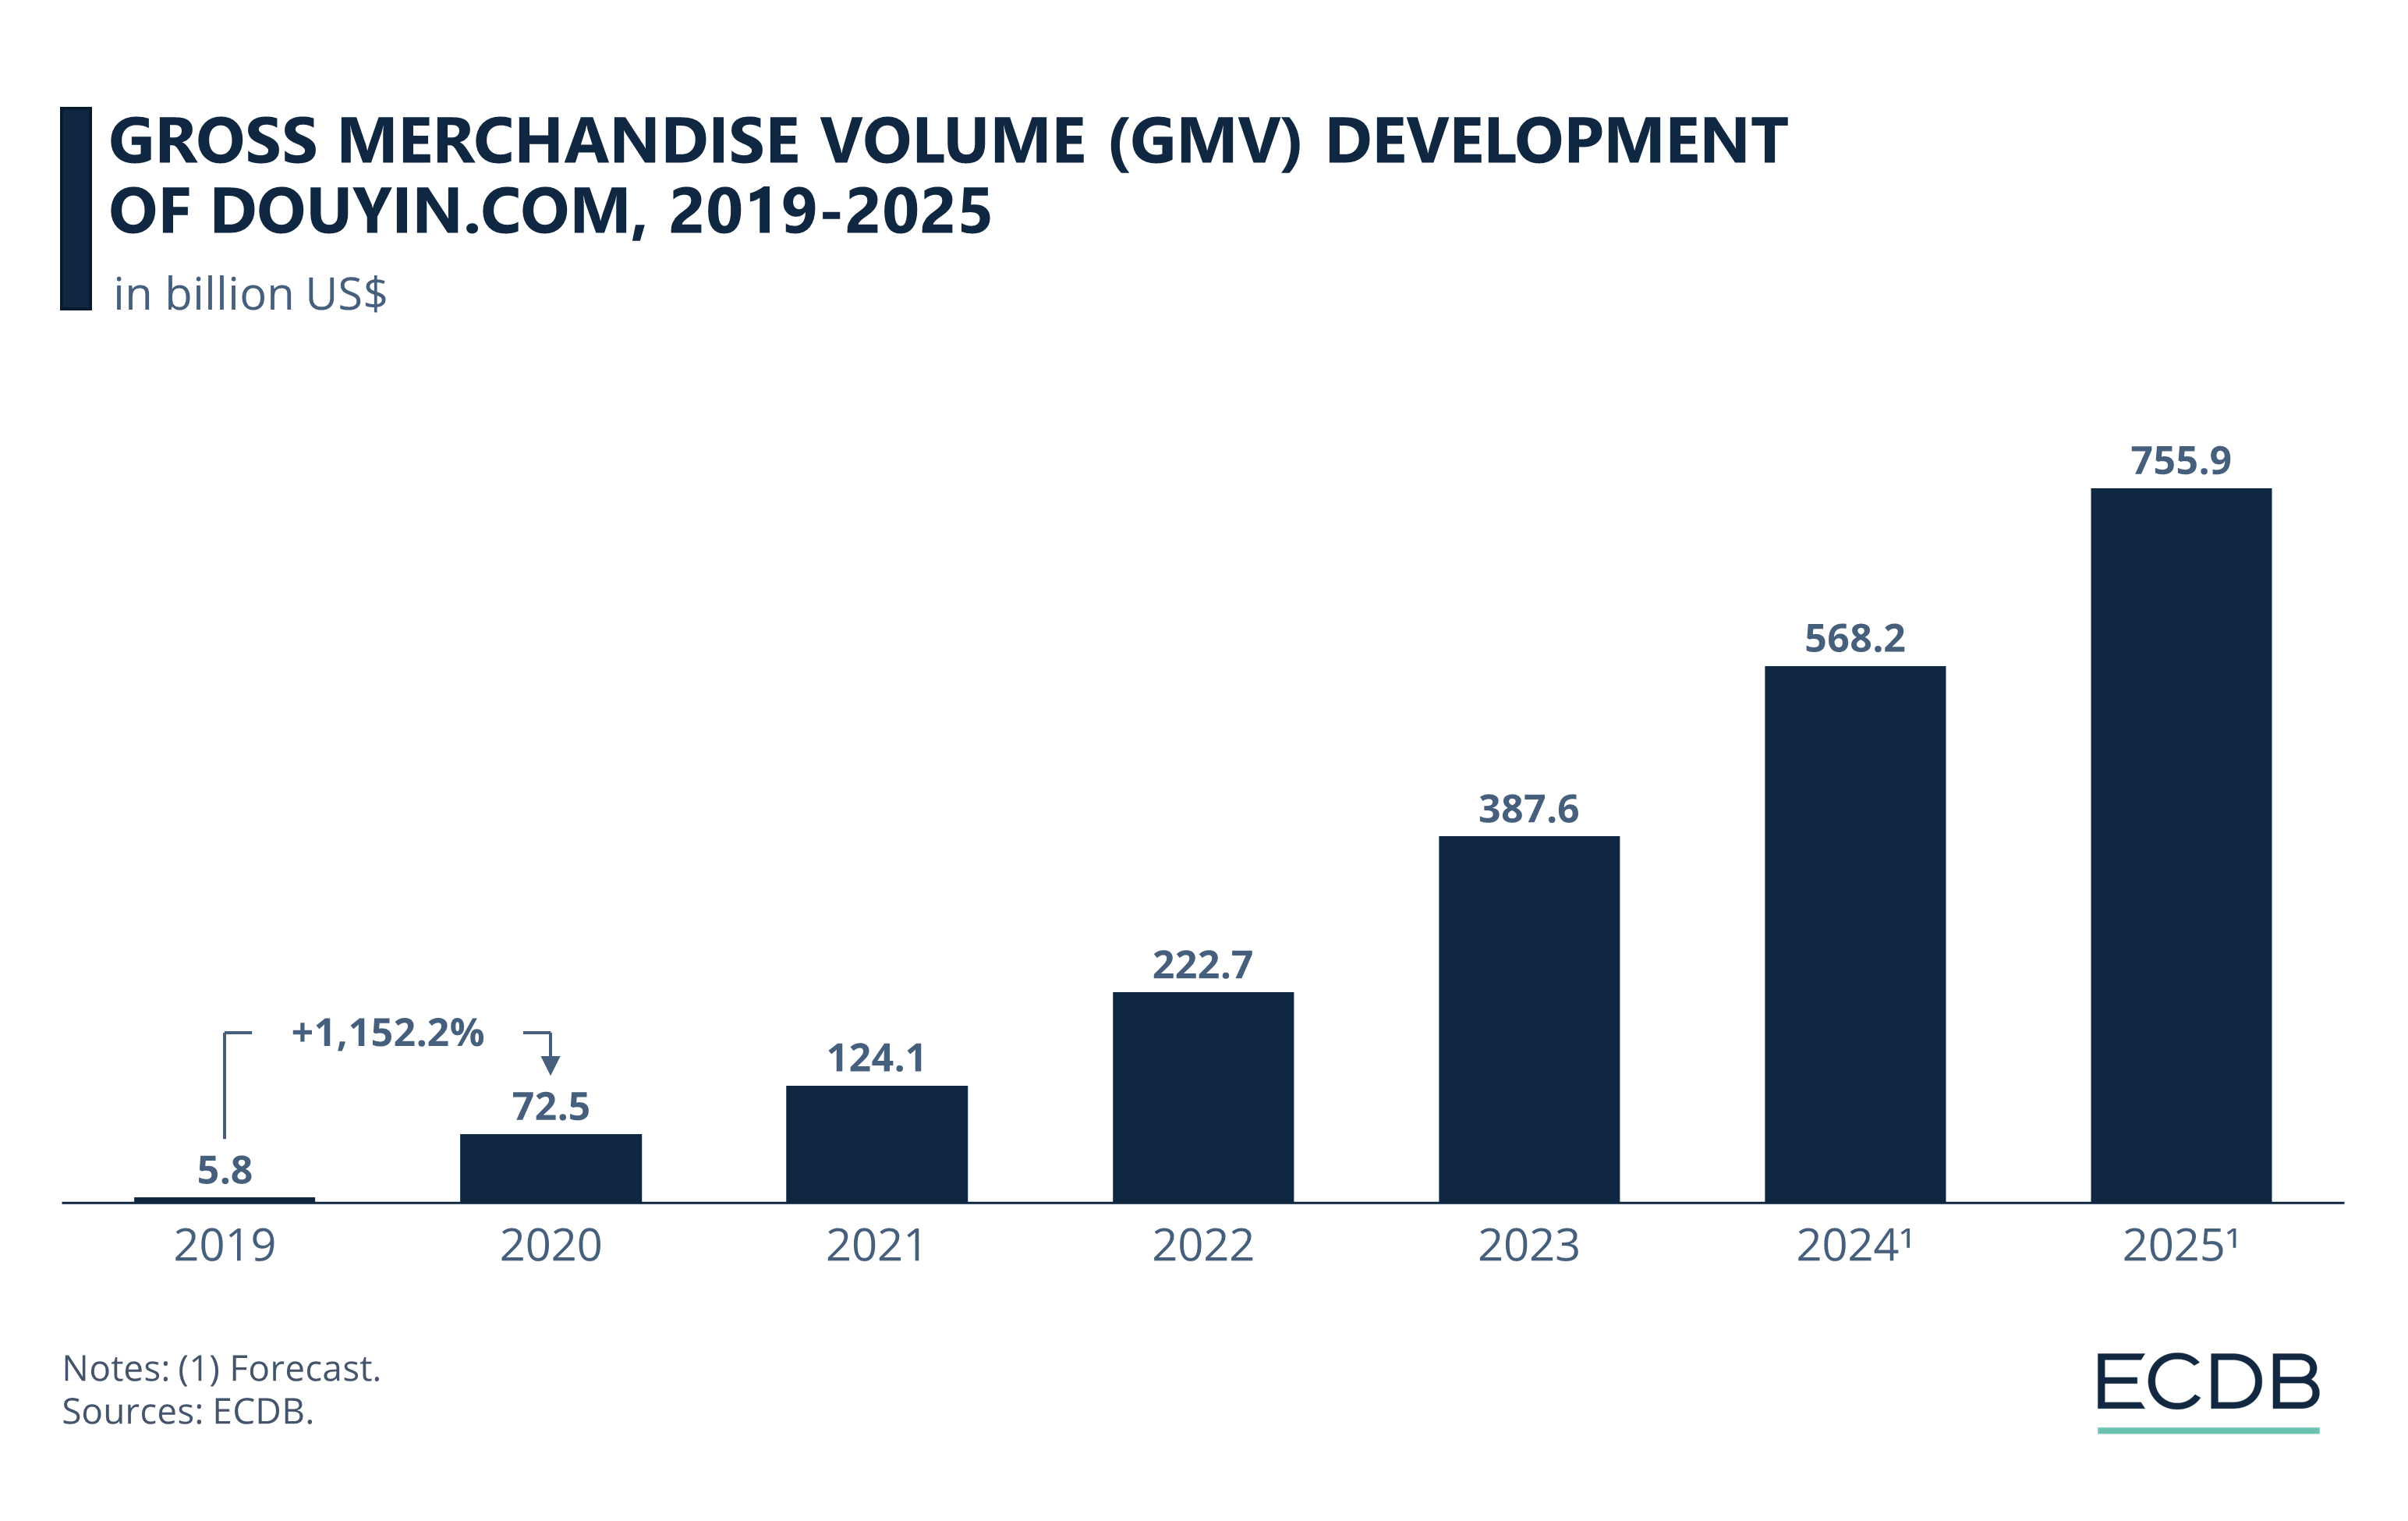 Gross Merchandise Volume (GMV) Development of Douyin.com, 2019-2025